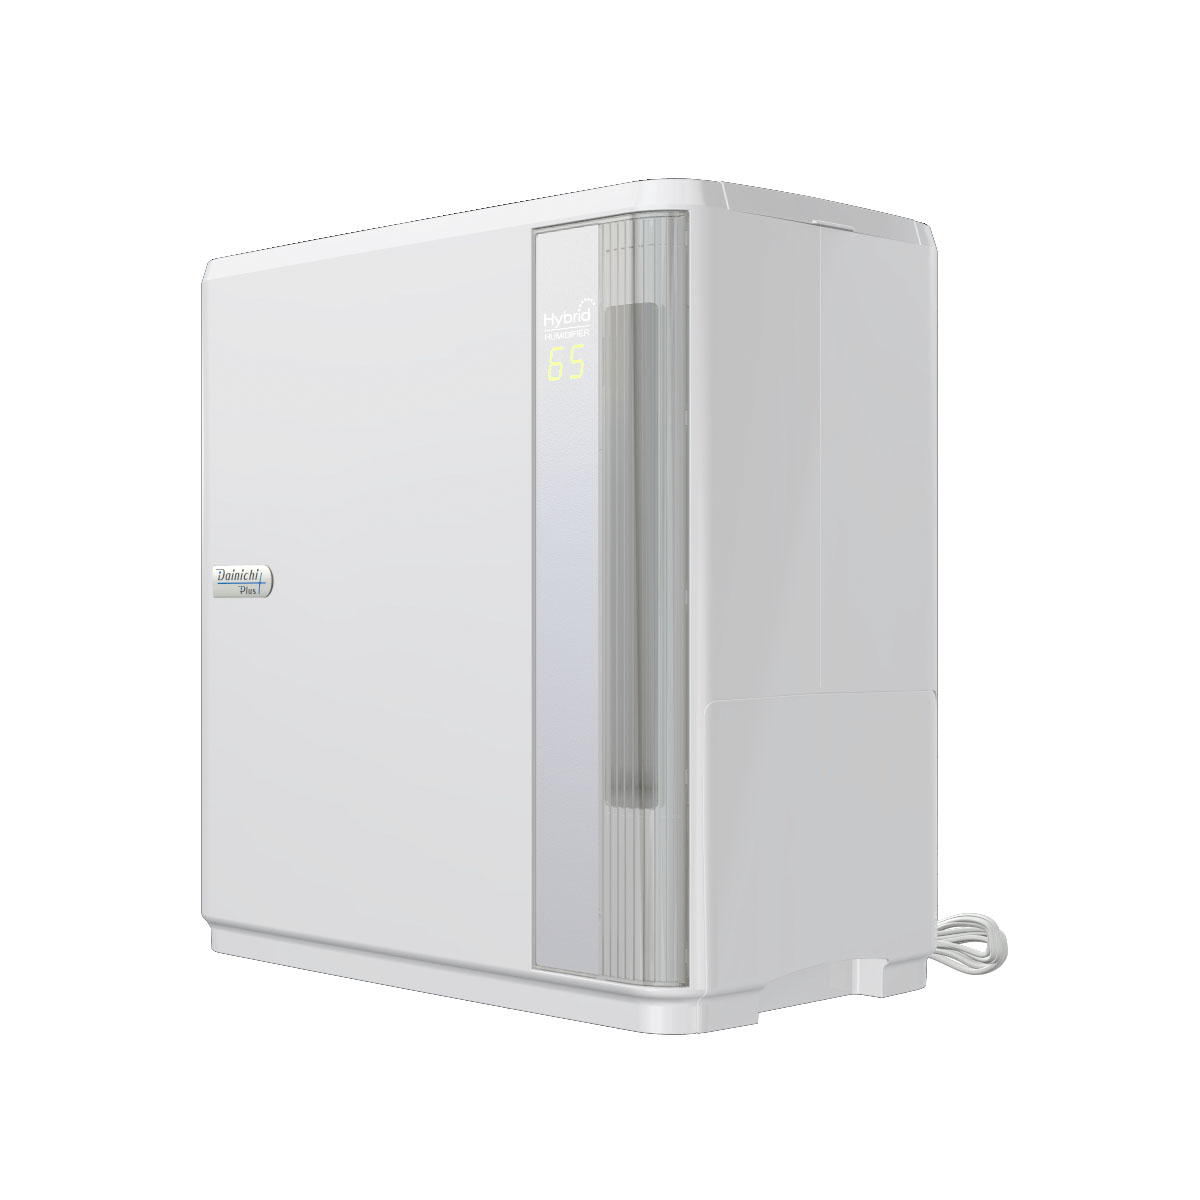 冷暖房/空調 加湿器 HD SERIES(WEBモデル) | 加湿器 | 製品紹介 | ダイニチ工業株式会社 